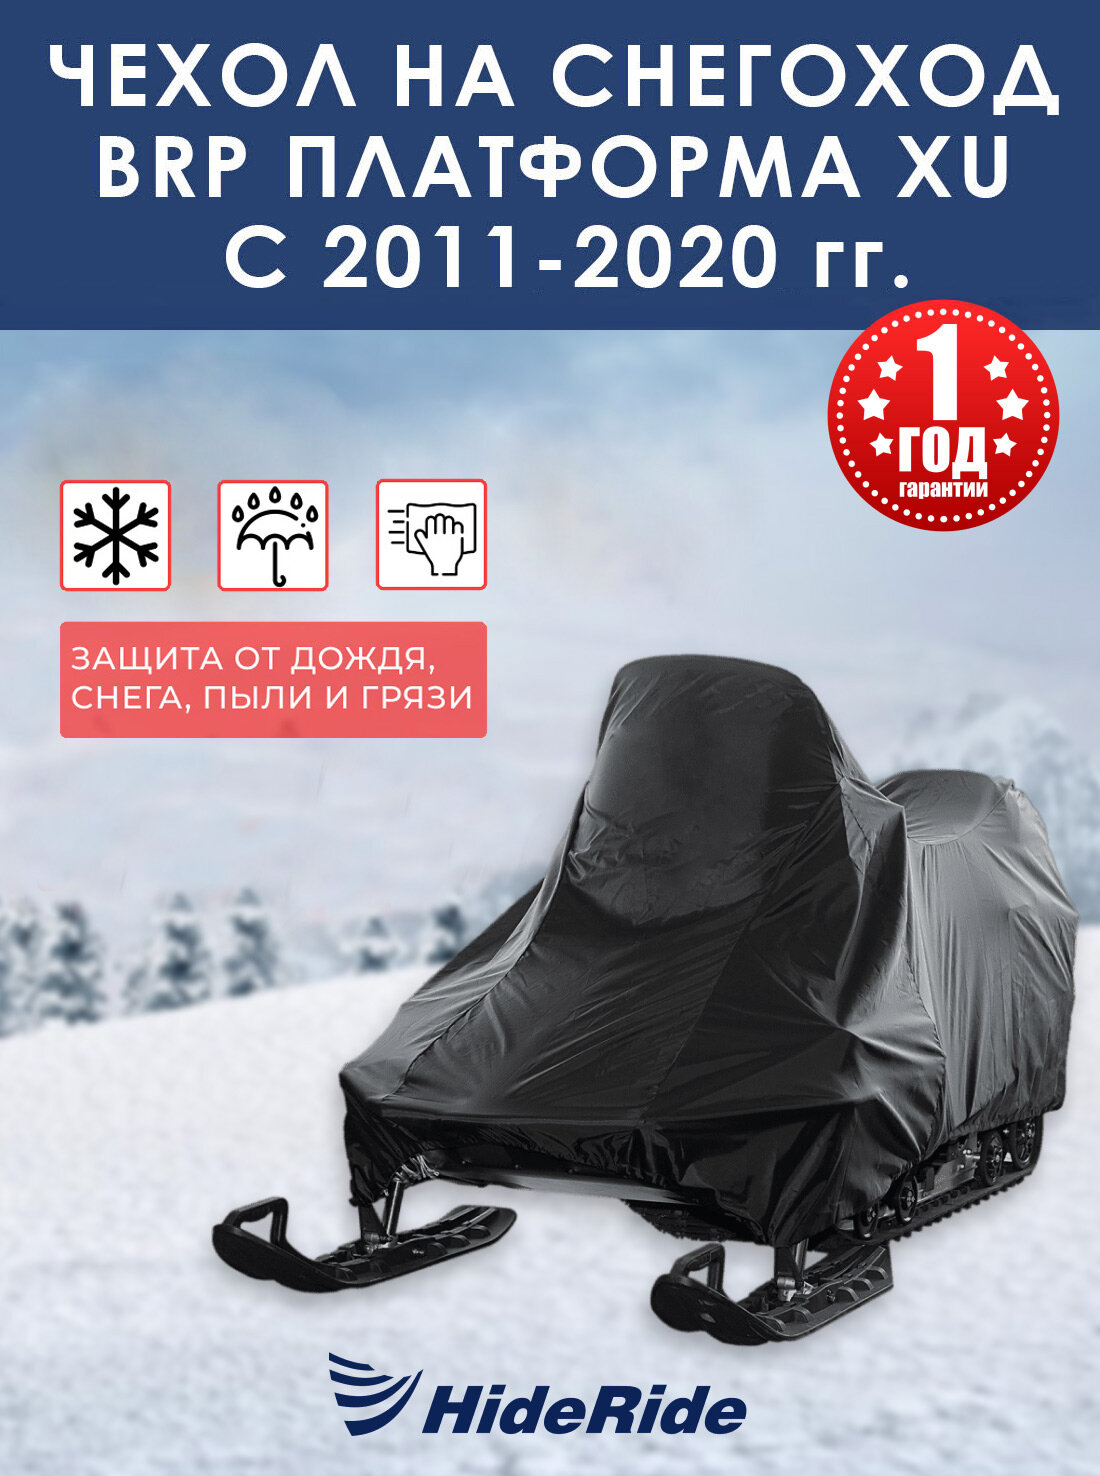 Чехол для снегохода BRP HideRide платформа XU с 2011-2020 г стояночный тент защитный